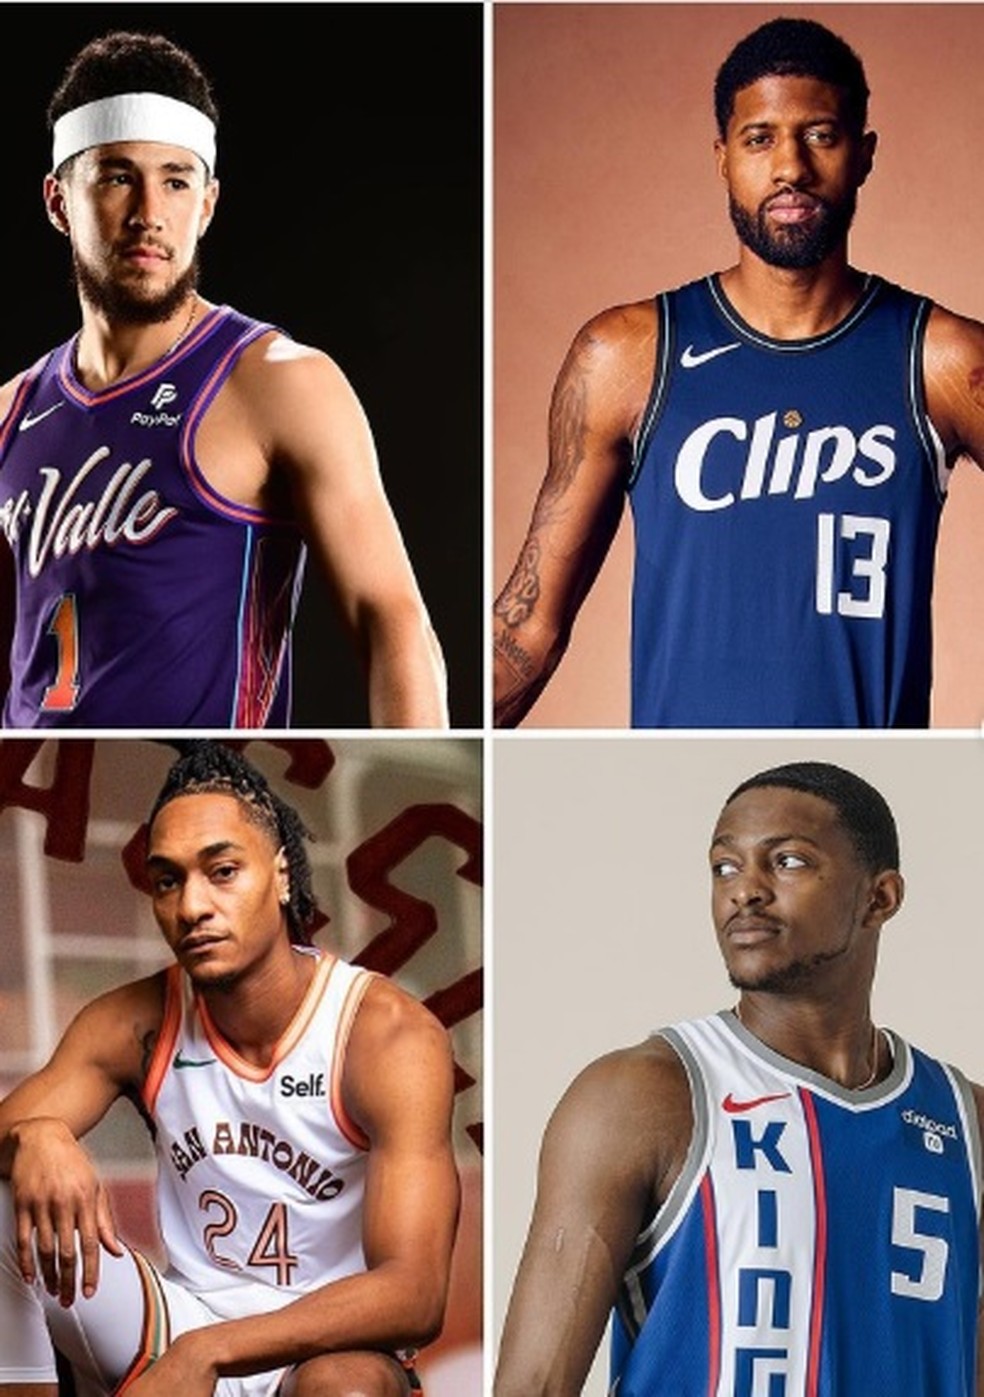 Camisas da NBA on X: Outra imagem do uniforme dos Knicks. Agora a